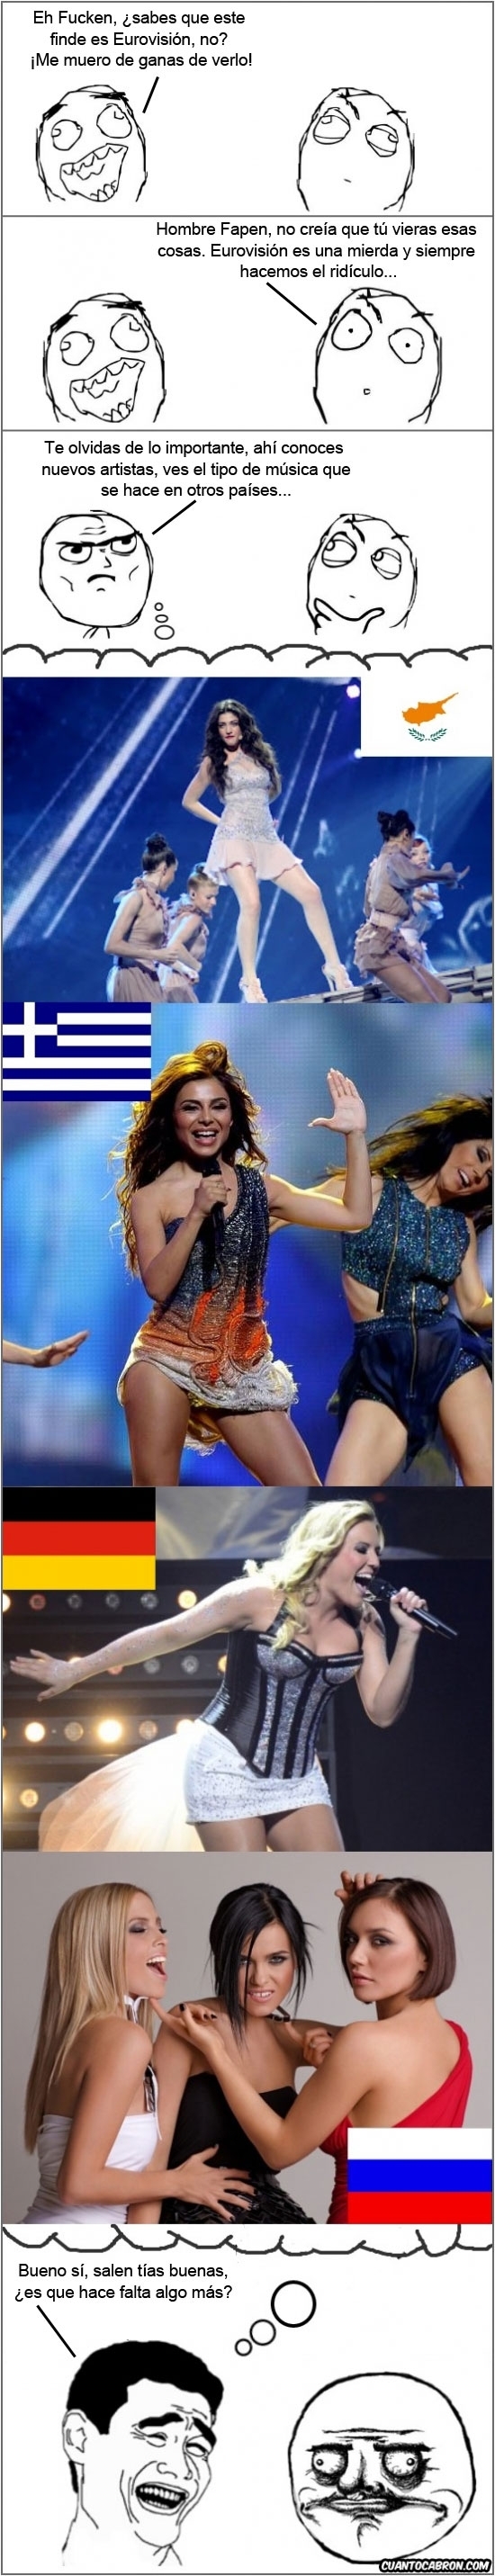 Mix - La verdadera razón por la que los tíos vemos Eurovisión